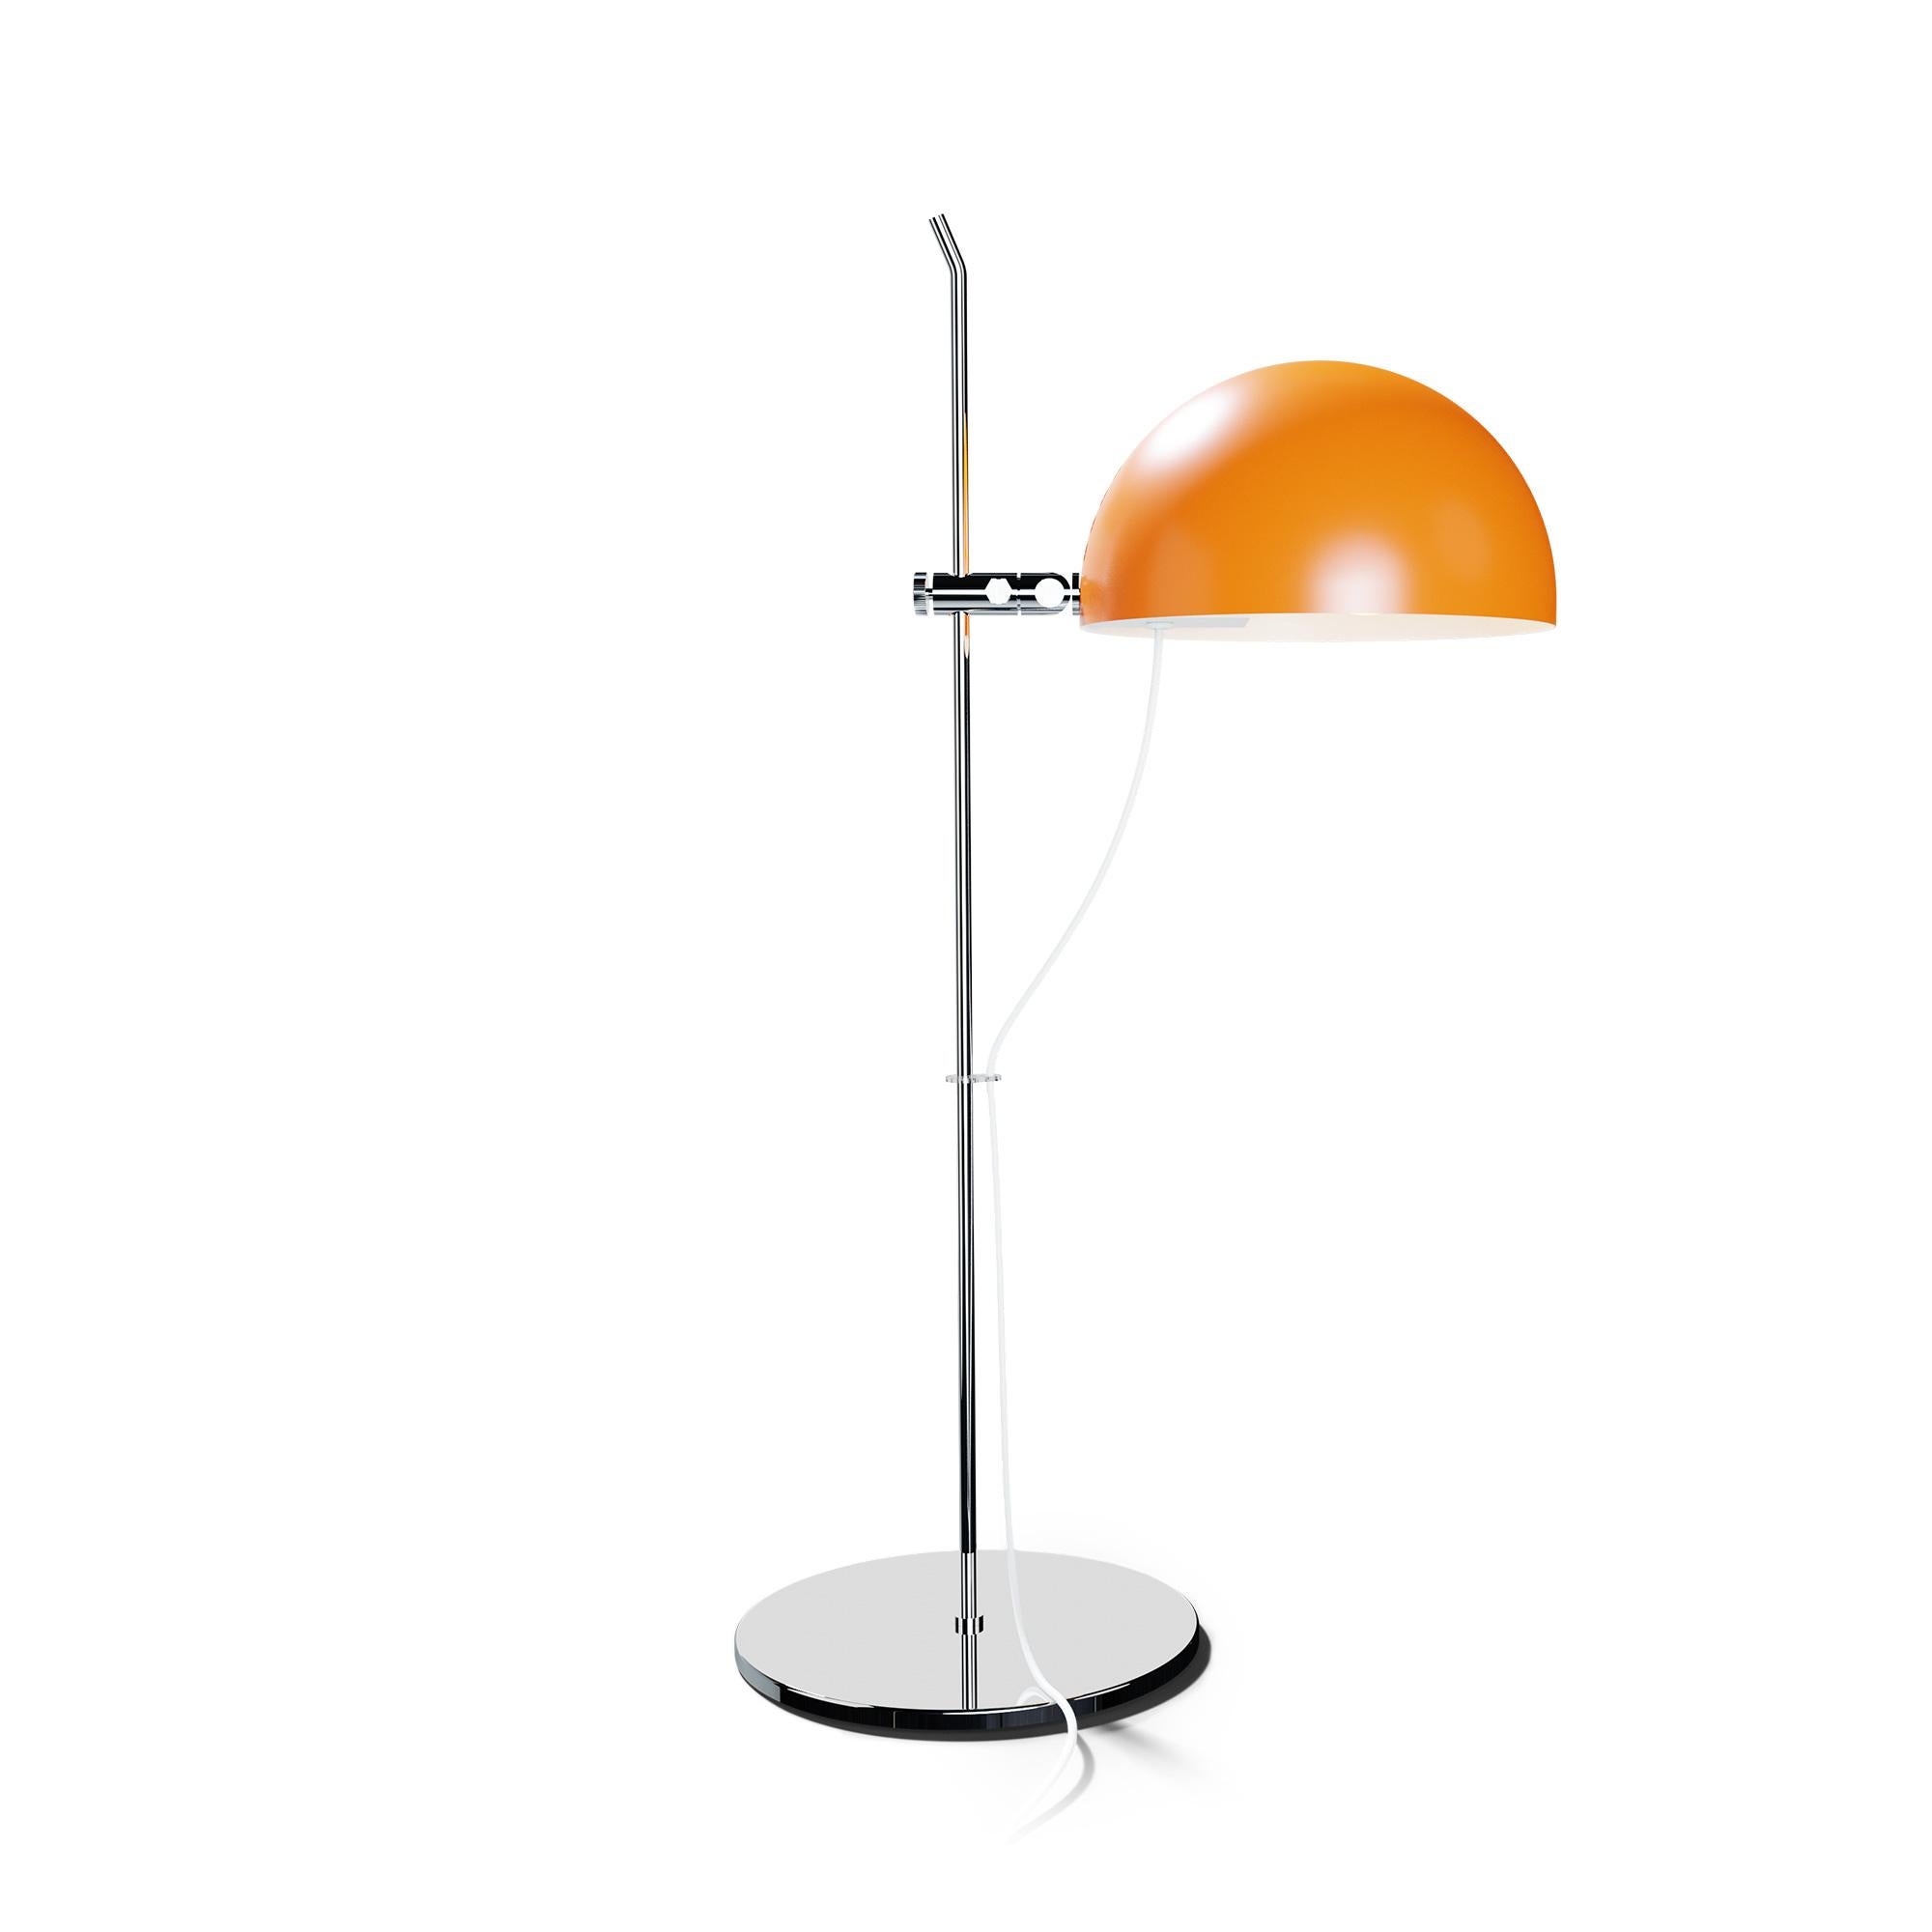 French Alain Richard 'A21' Desk Lamp in Orange for Disderot For Sale